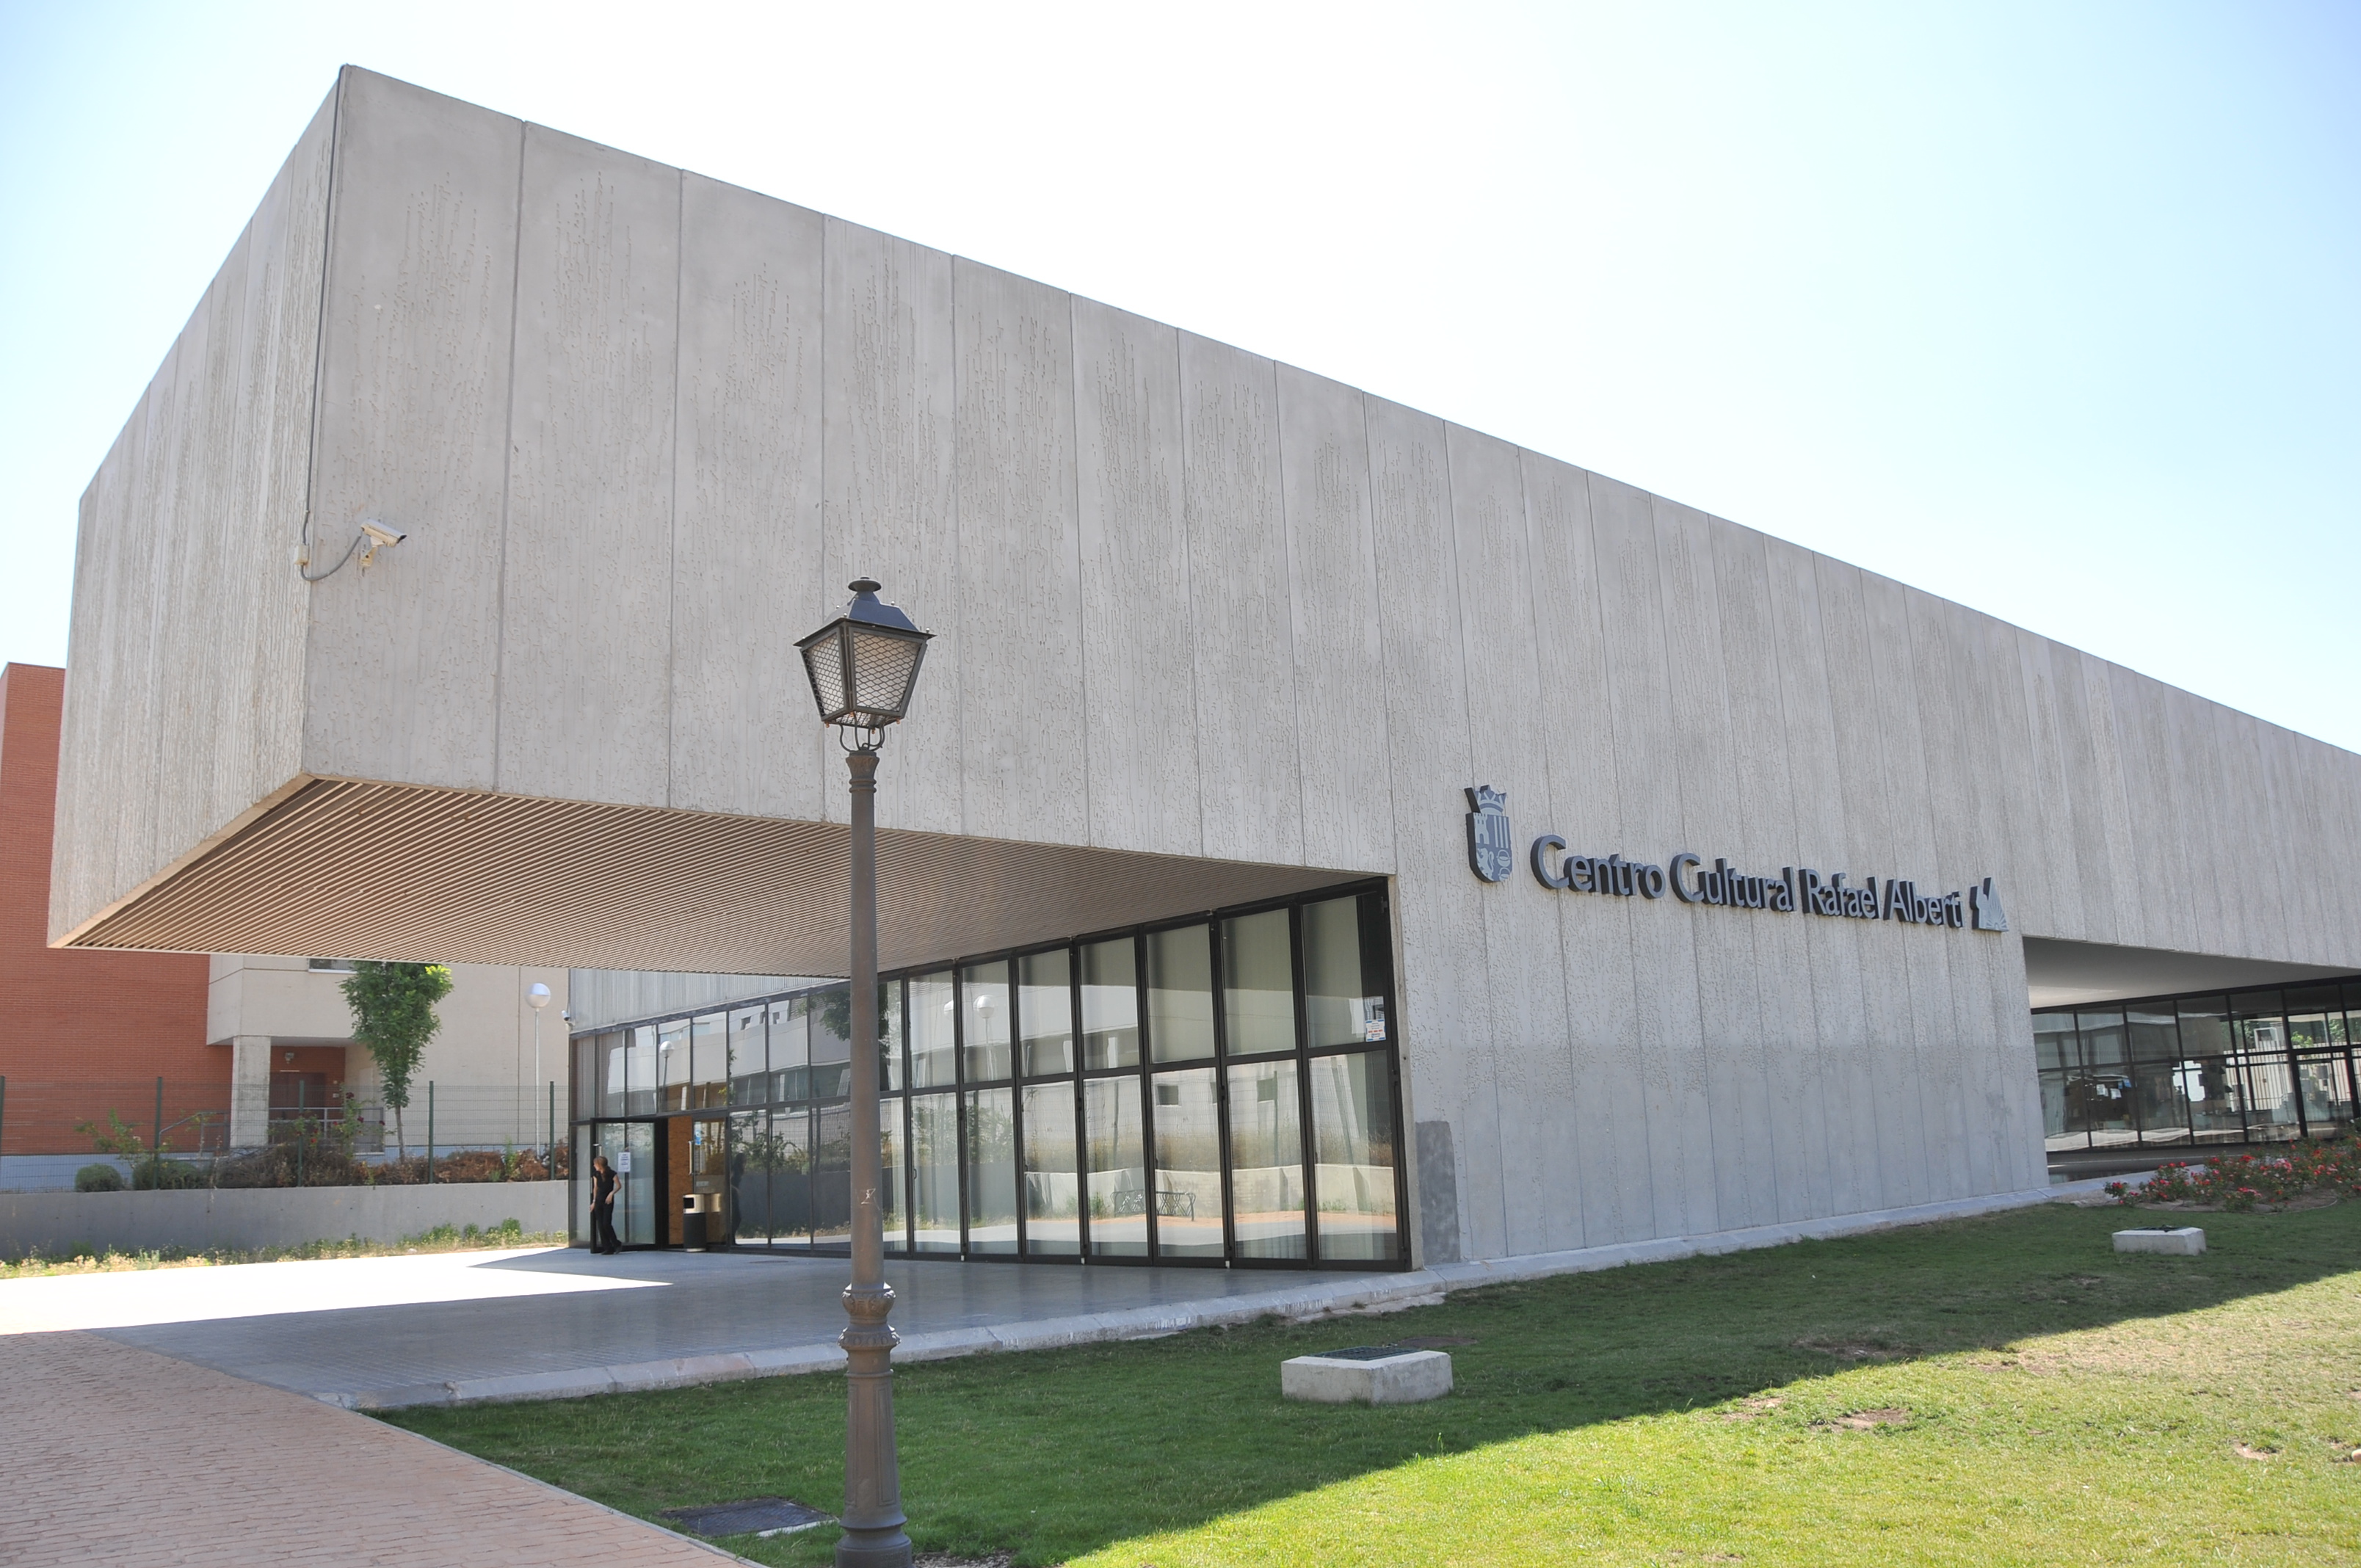 Centro Cultural Rafael Alberti